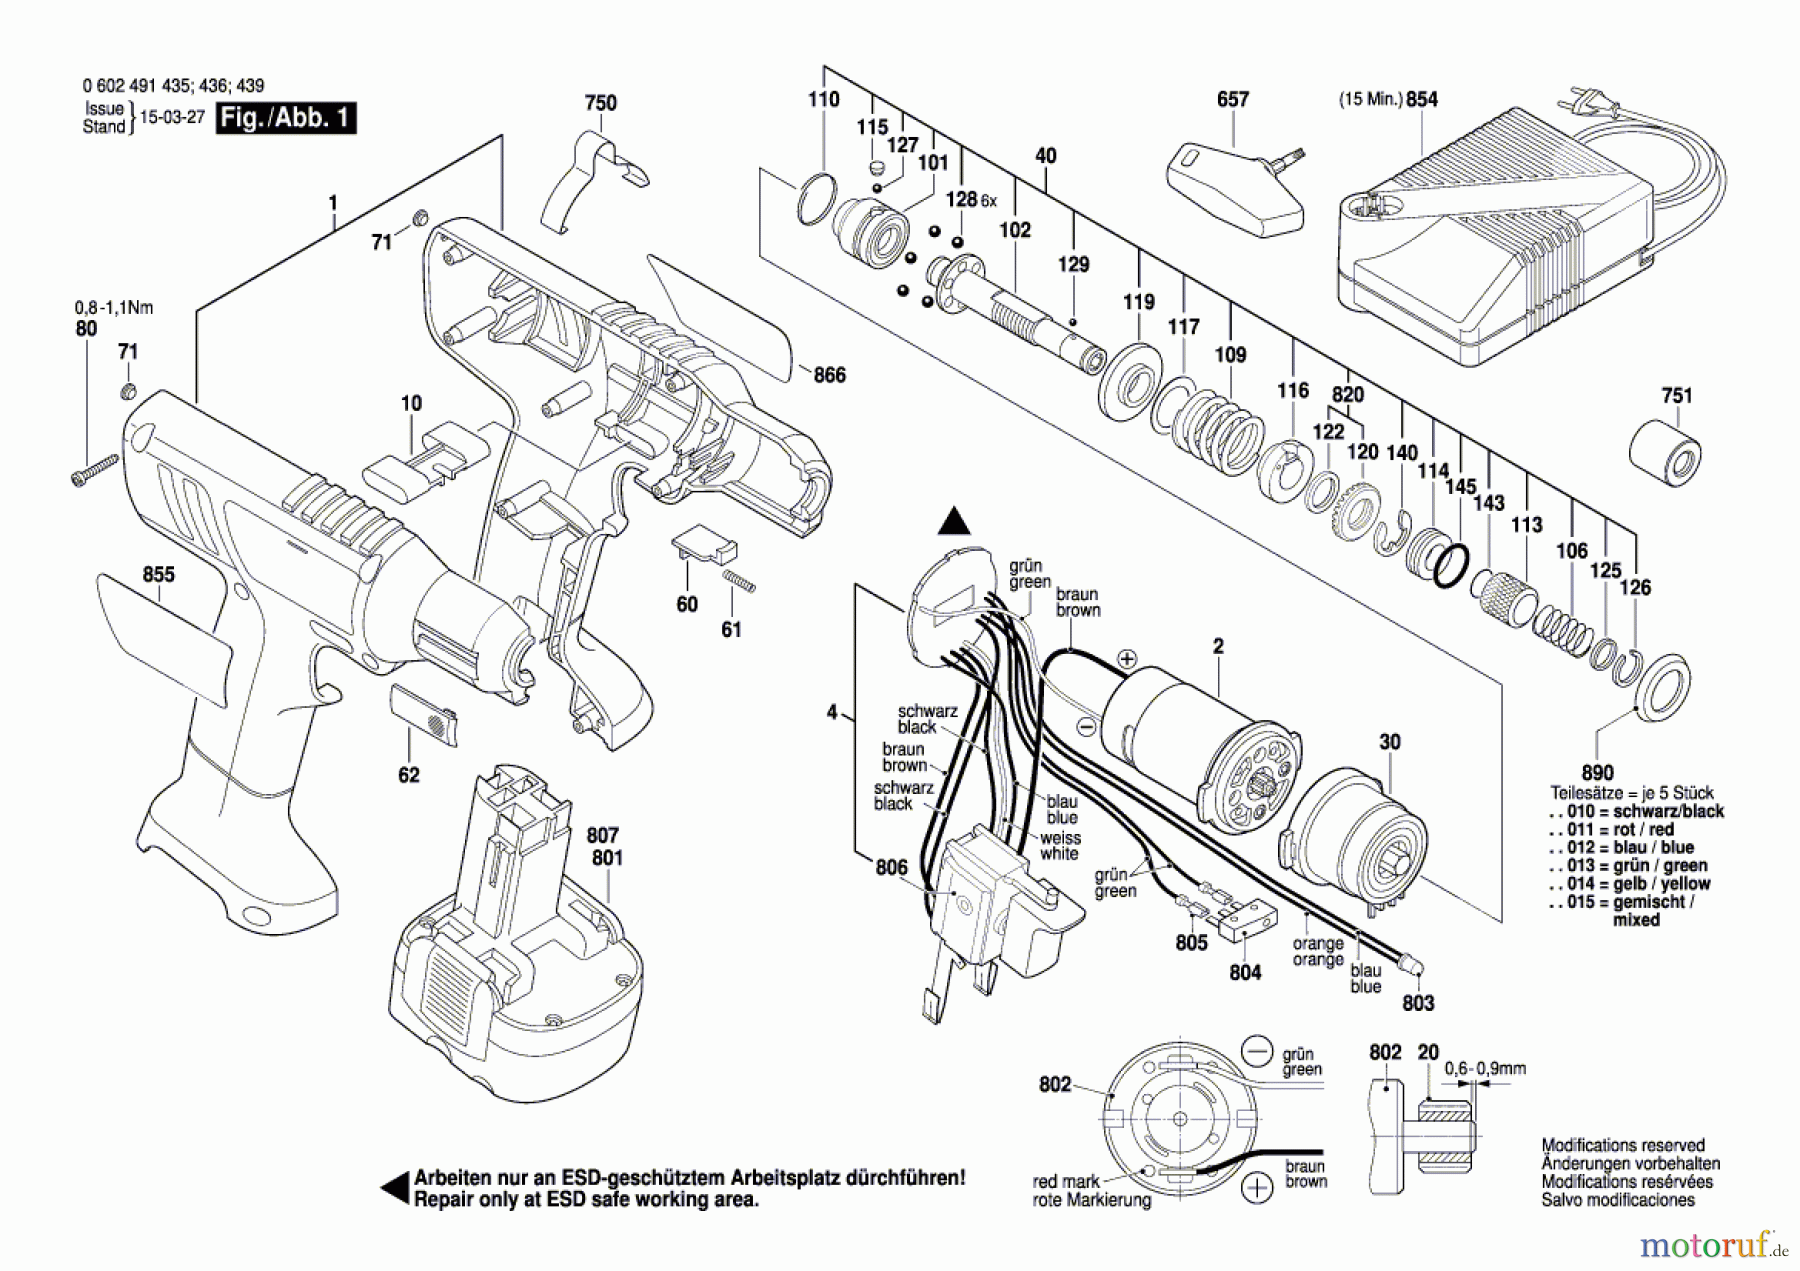  Bosch Akku Werkzeug Akku-Schrauber BT-EXACT 7 Seite 1